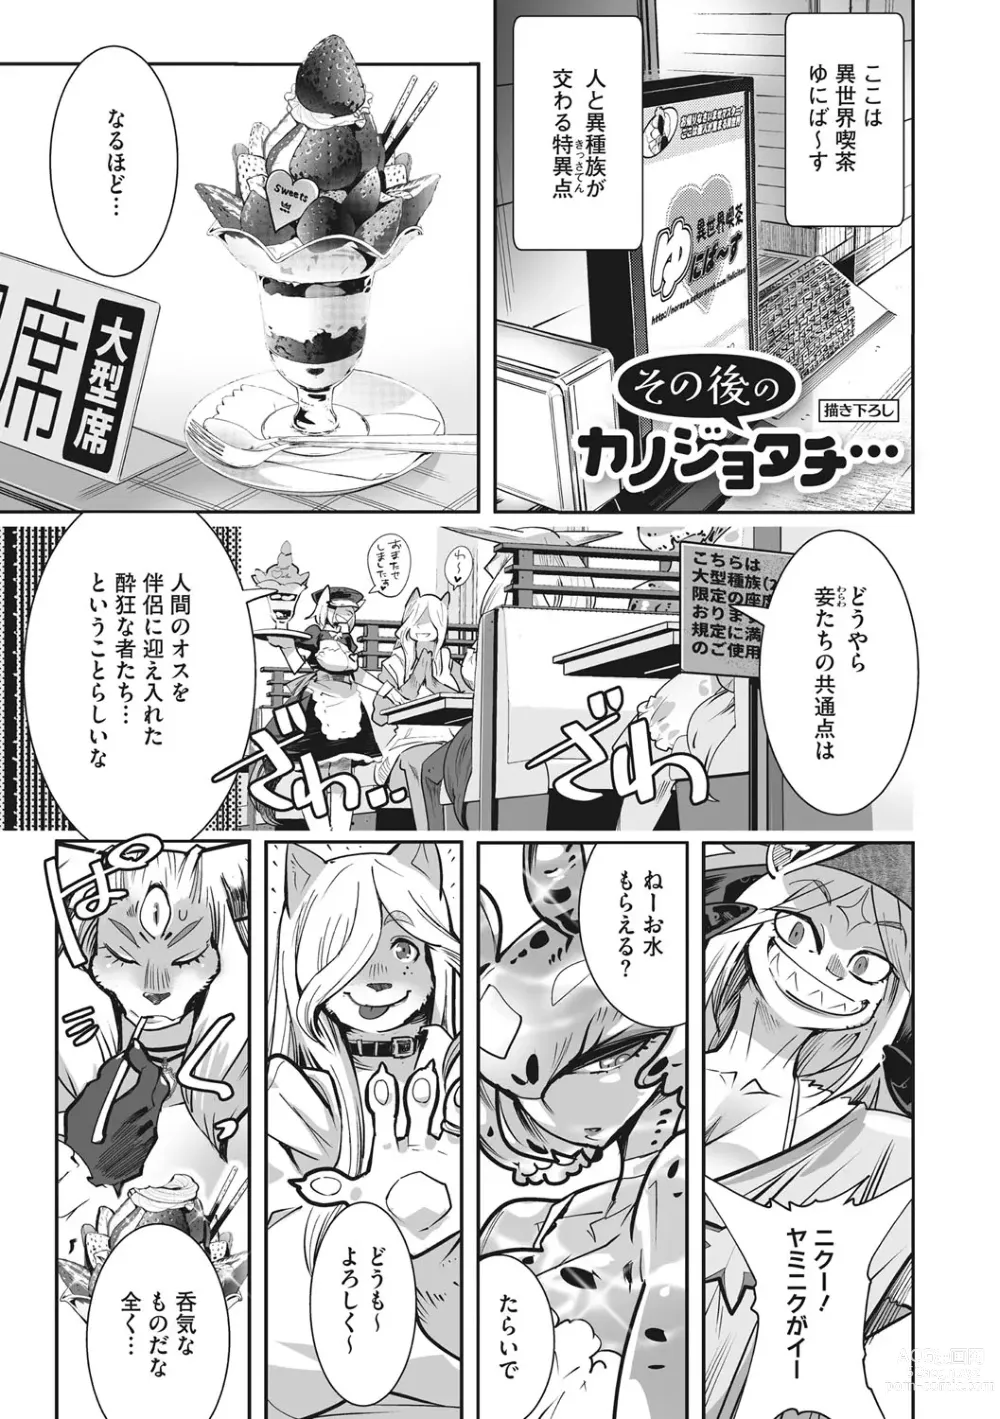 Page 226 of manga Kemono to Koishite Nani ga Warui!